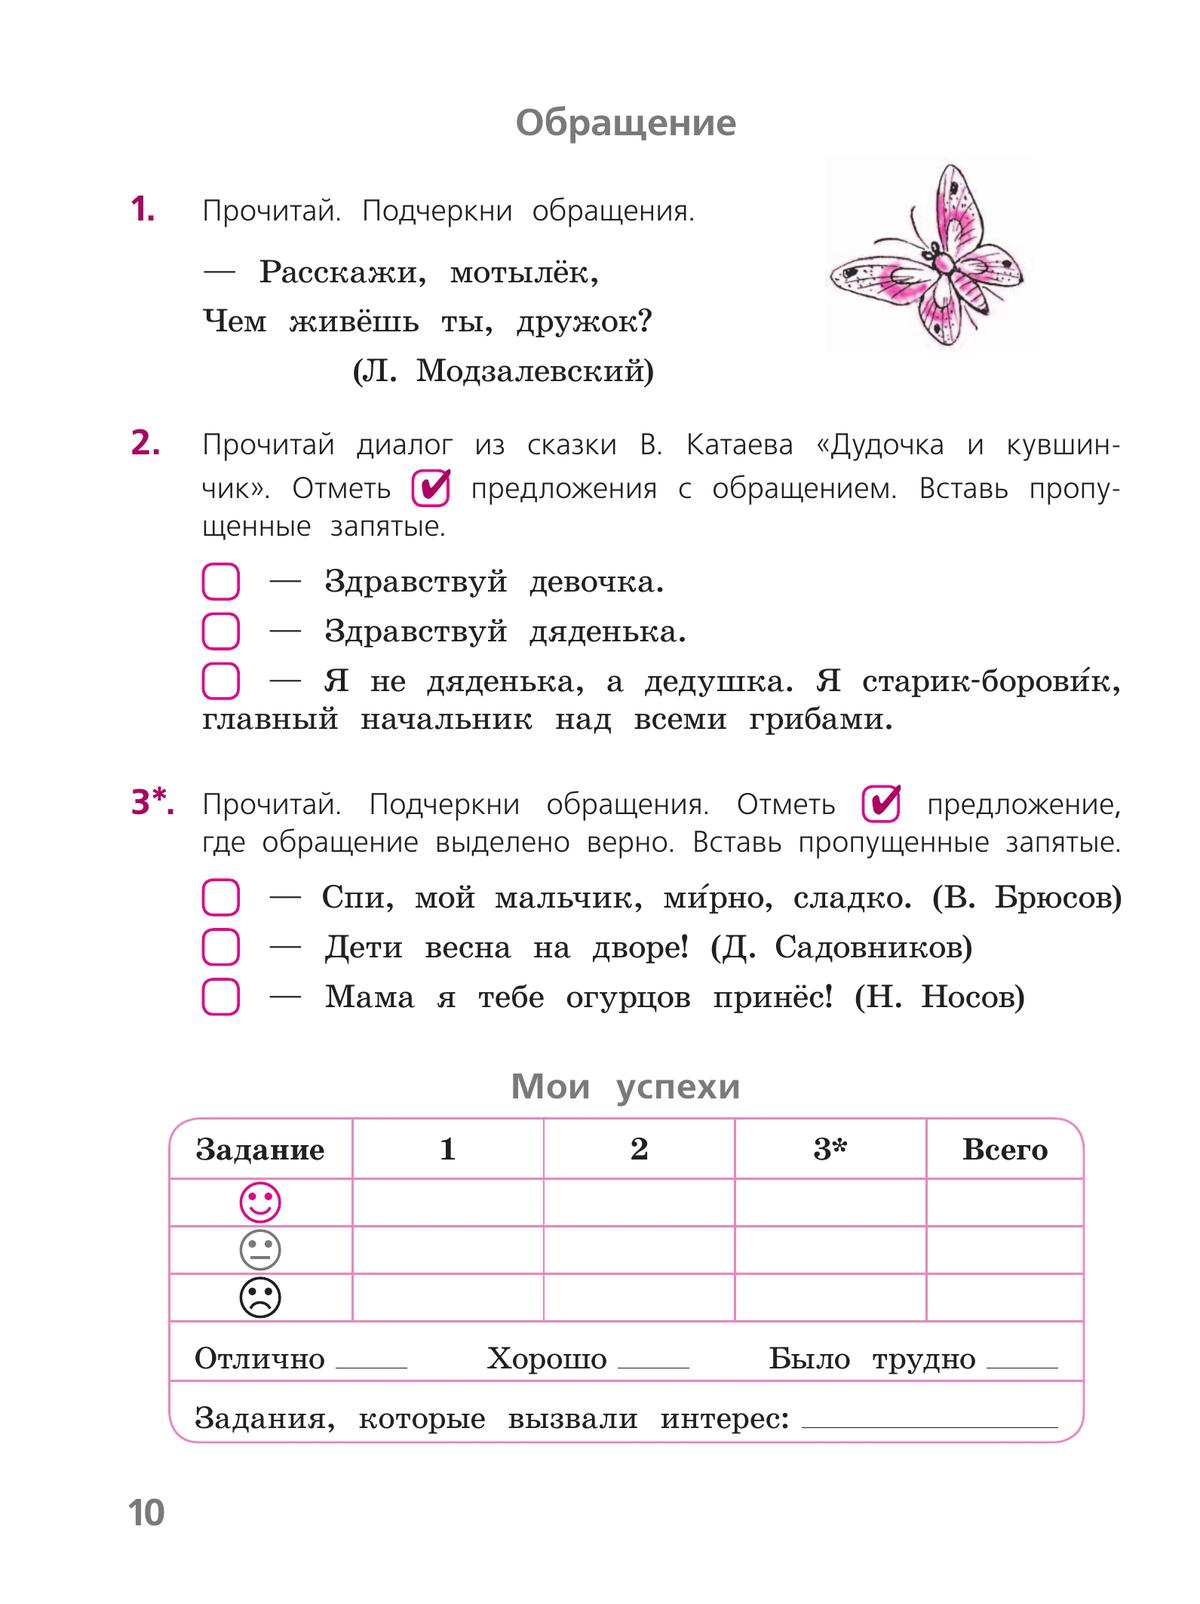 Русский язык. Тетрадь учебных достижений. 4 класс 7